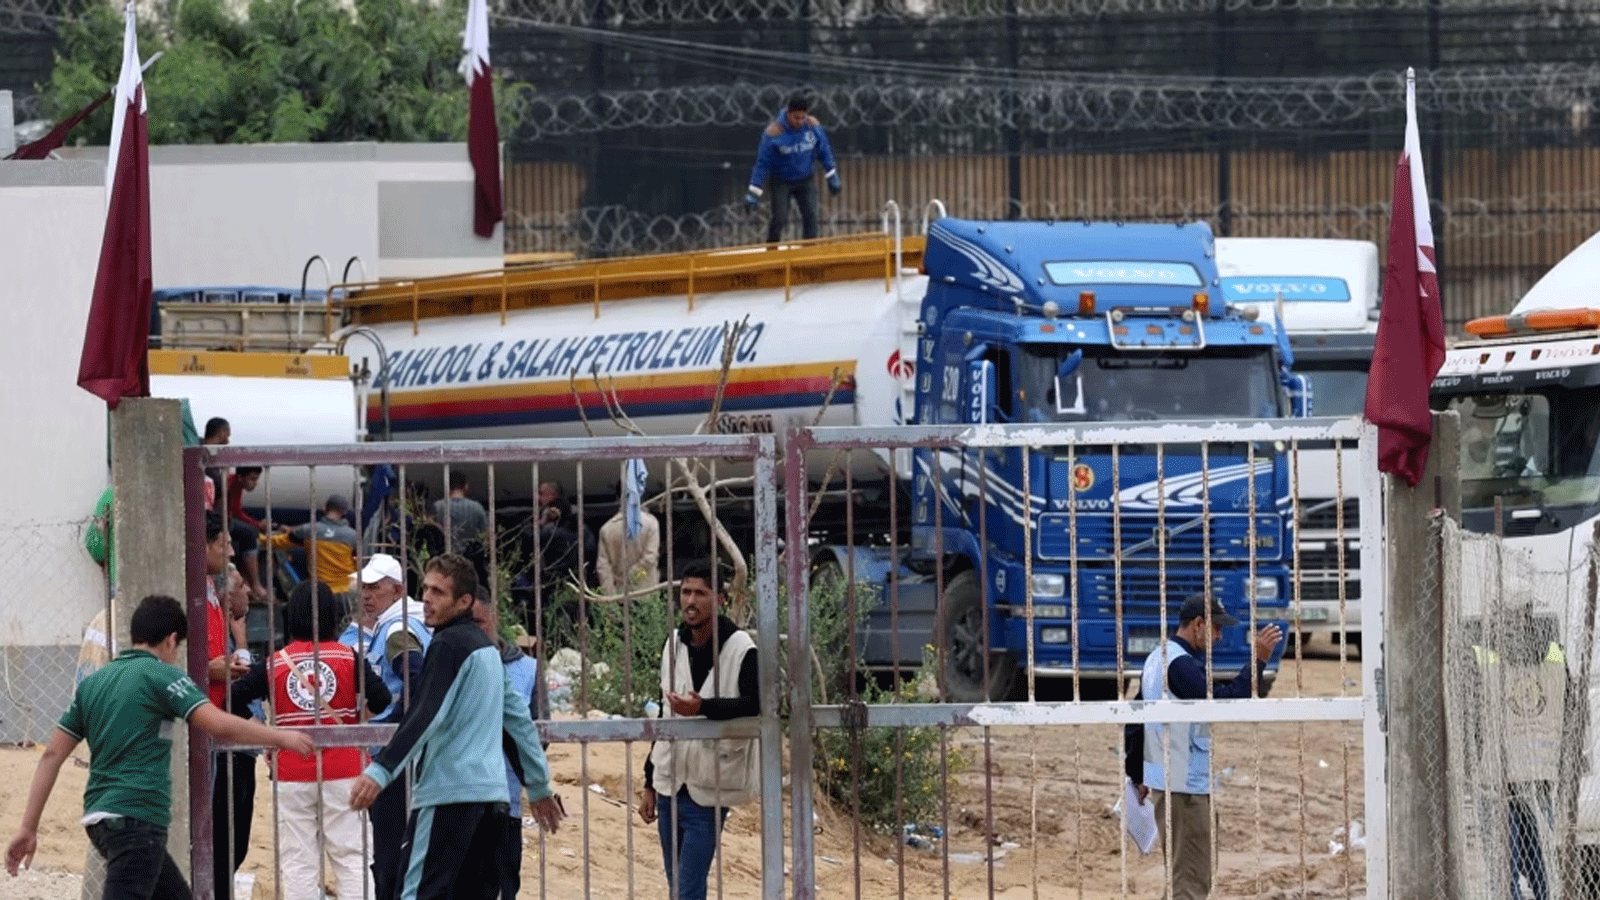 شاحنة محملة بالوقود تستعد للعبور إلى رفح في جنوب قطاع غزة في 15 نوفمبر(تشرين الثاني) 2023، وسط المعارك المستمرة بين إسرائيل وحركة حماس الفلسطينية